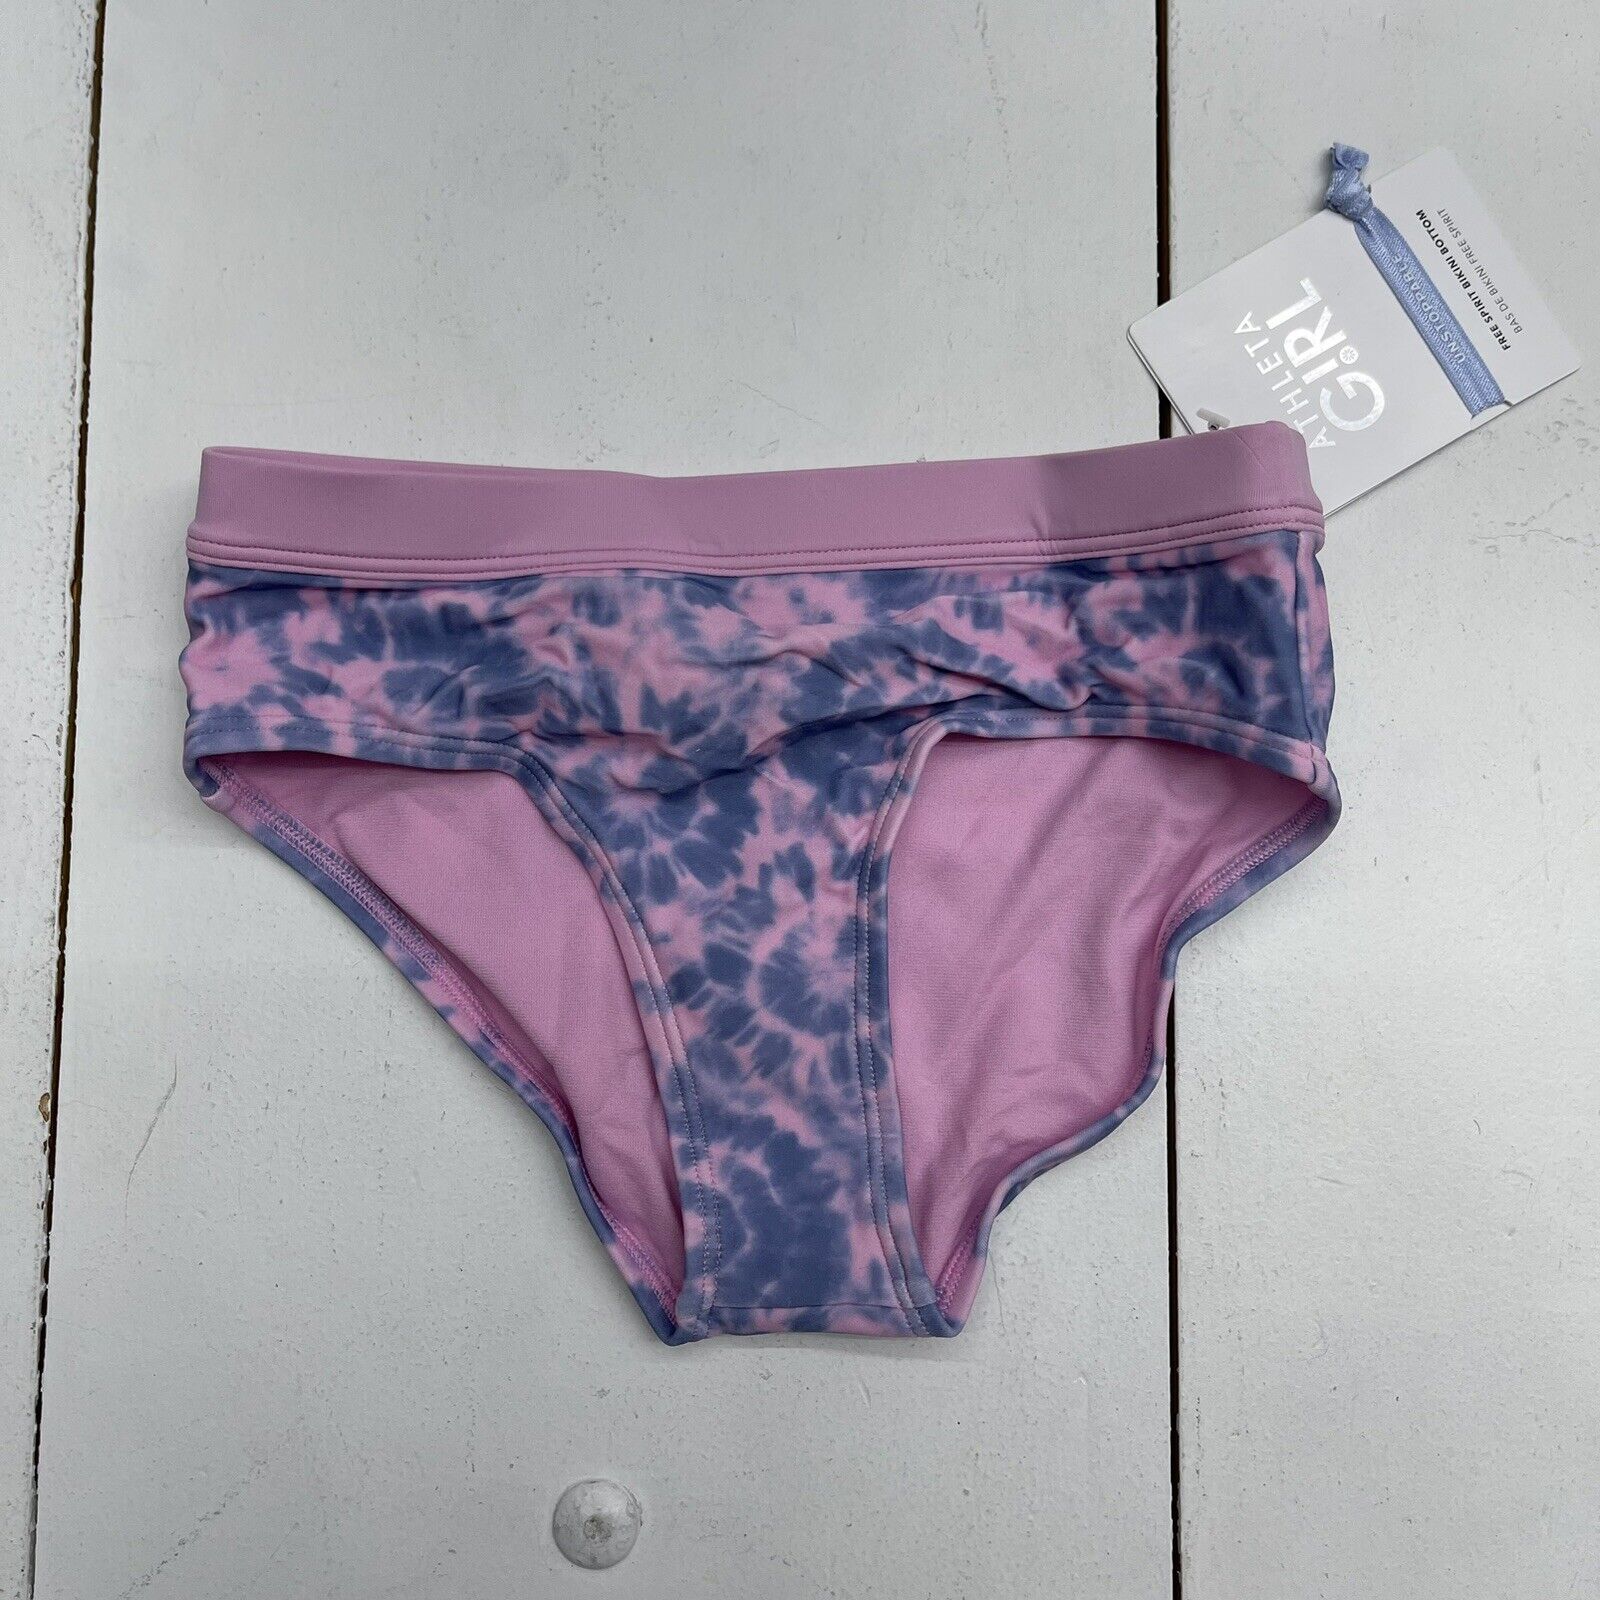 Athleta Girl Free Spirit Pink Blue Tie Dye Bikini Bottoms Size Medium -  beyond exchange